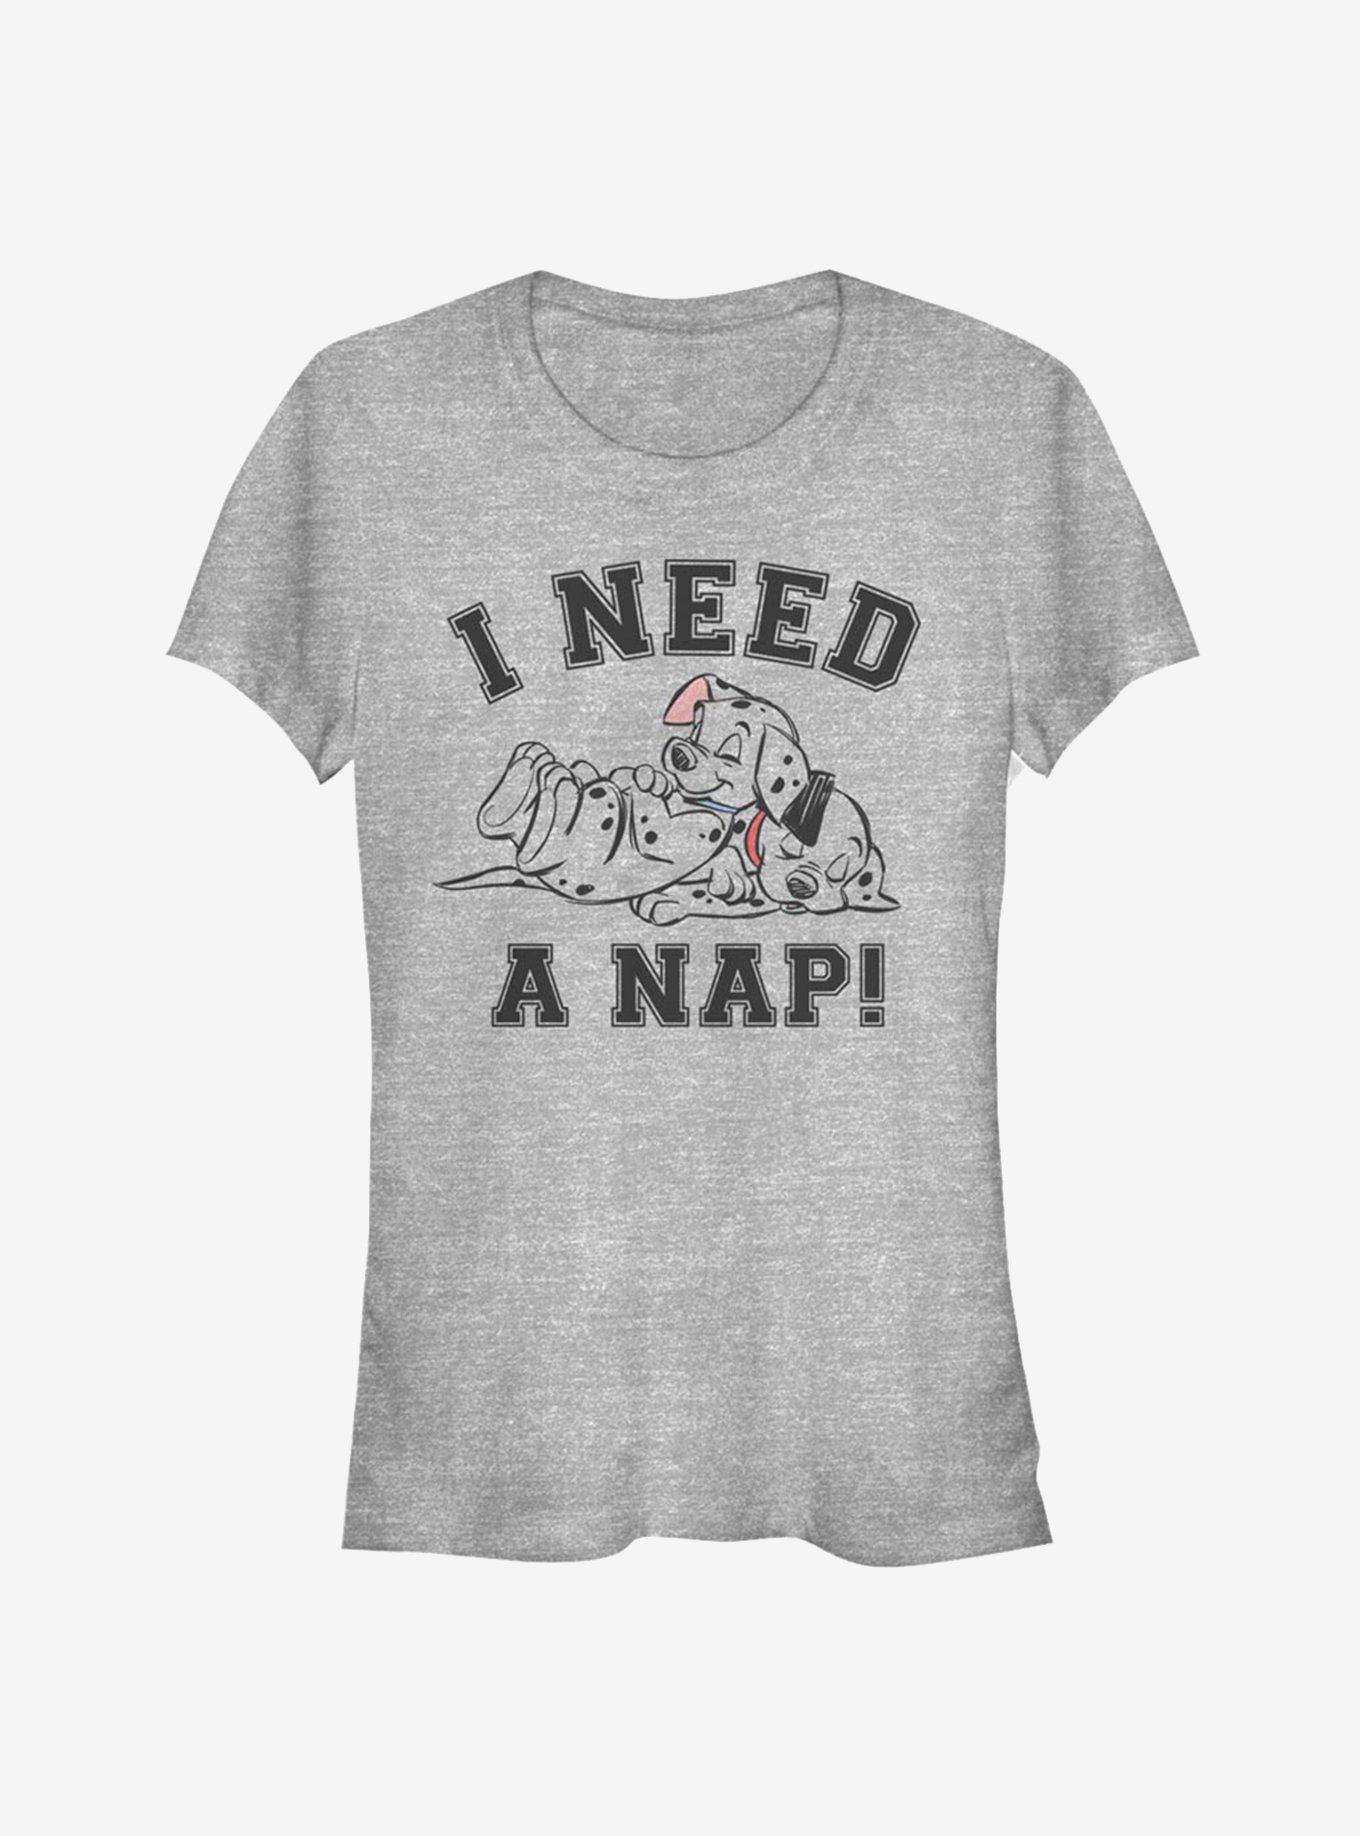 Disney 101 Dalmatians I Need A Nap Classic Girls T-Shirt, ATH HTR, hi-res